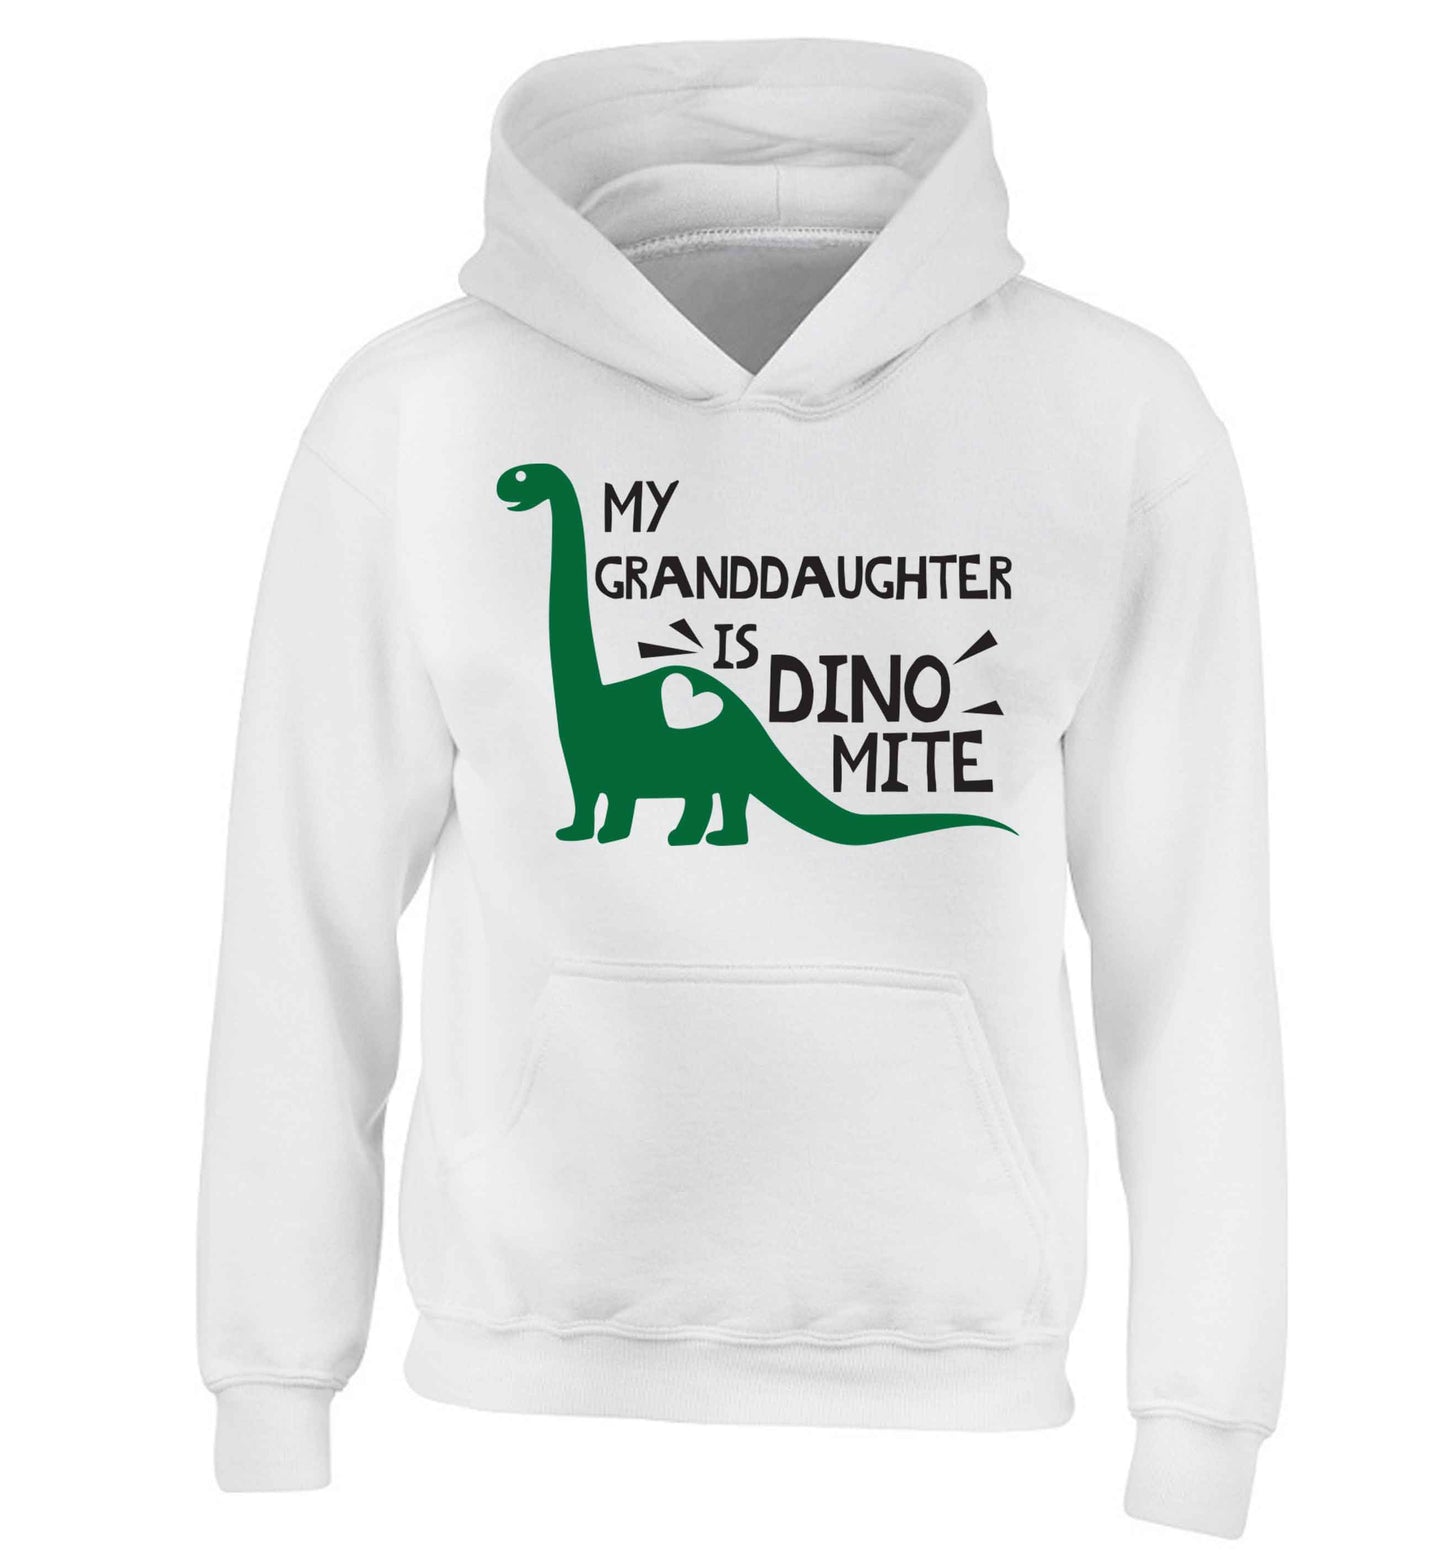 My granddaughter is dinomite! children's white hoodie 12-13 Years